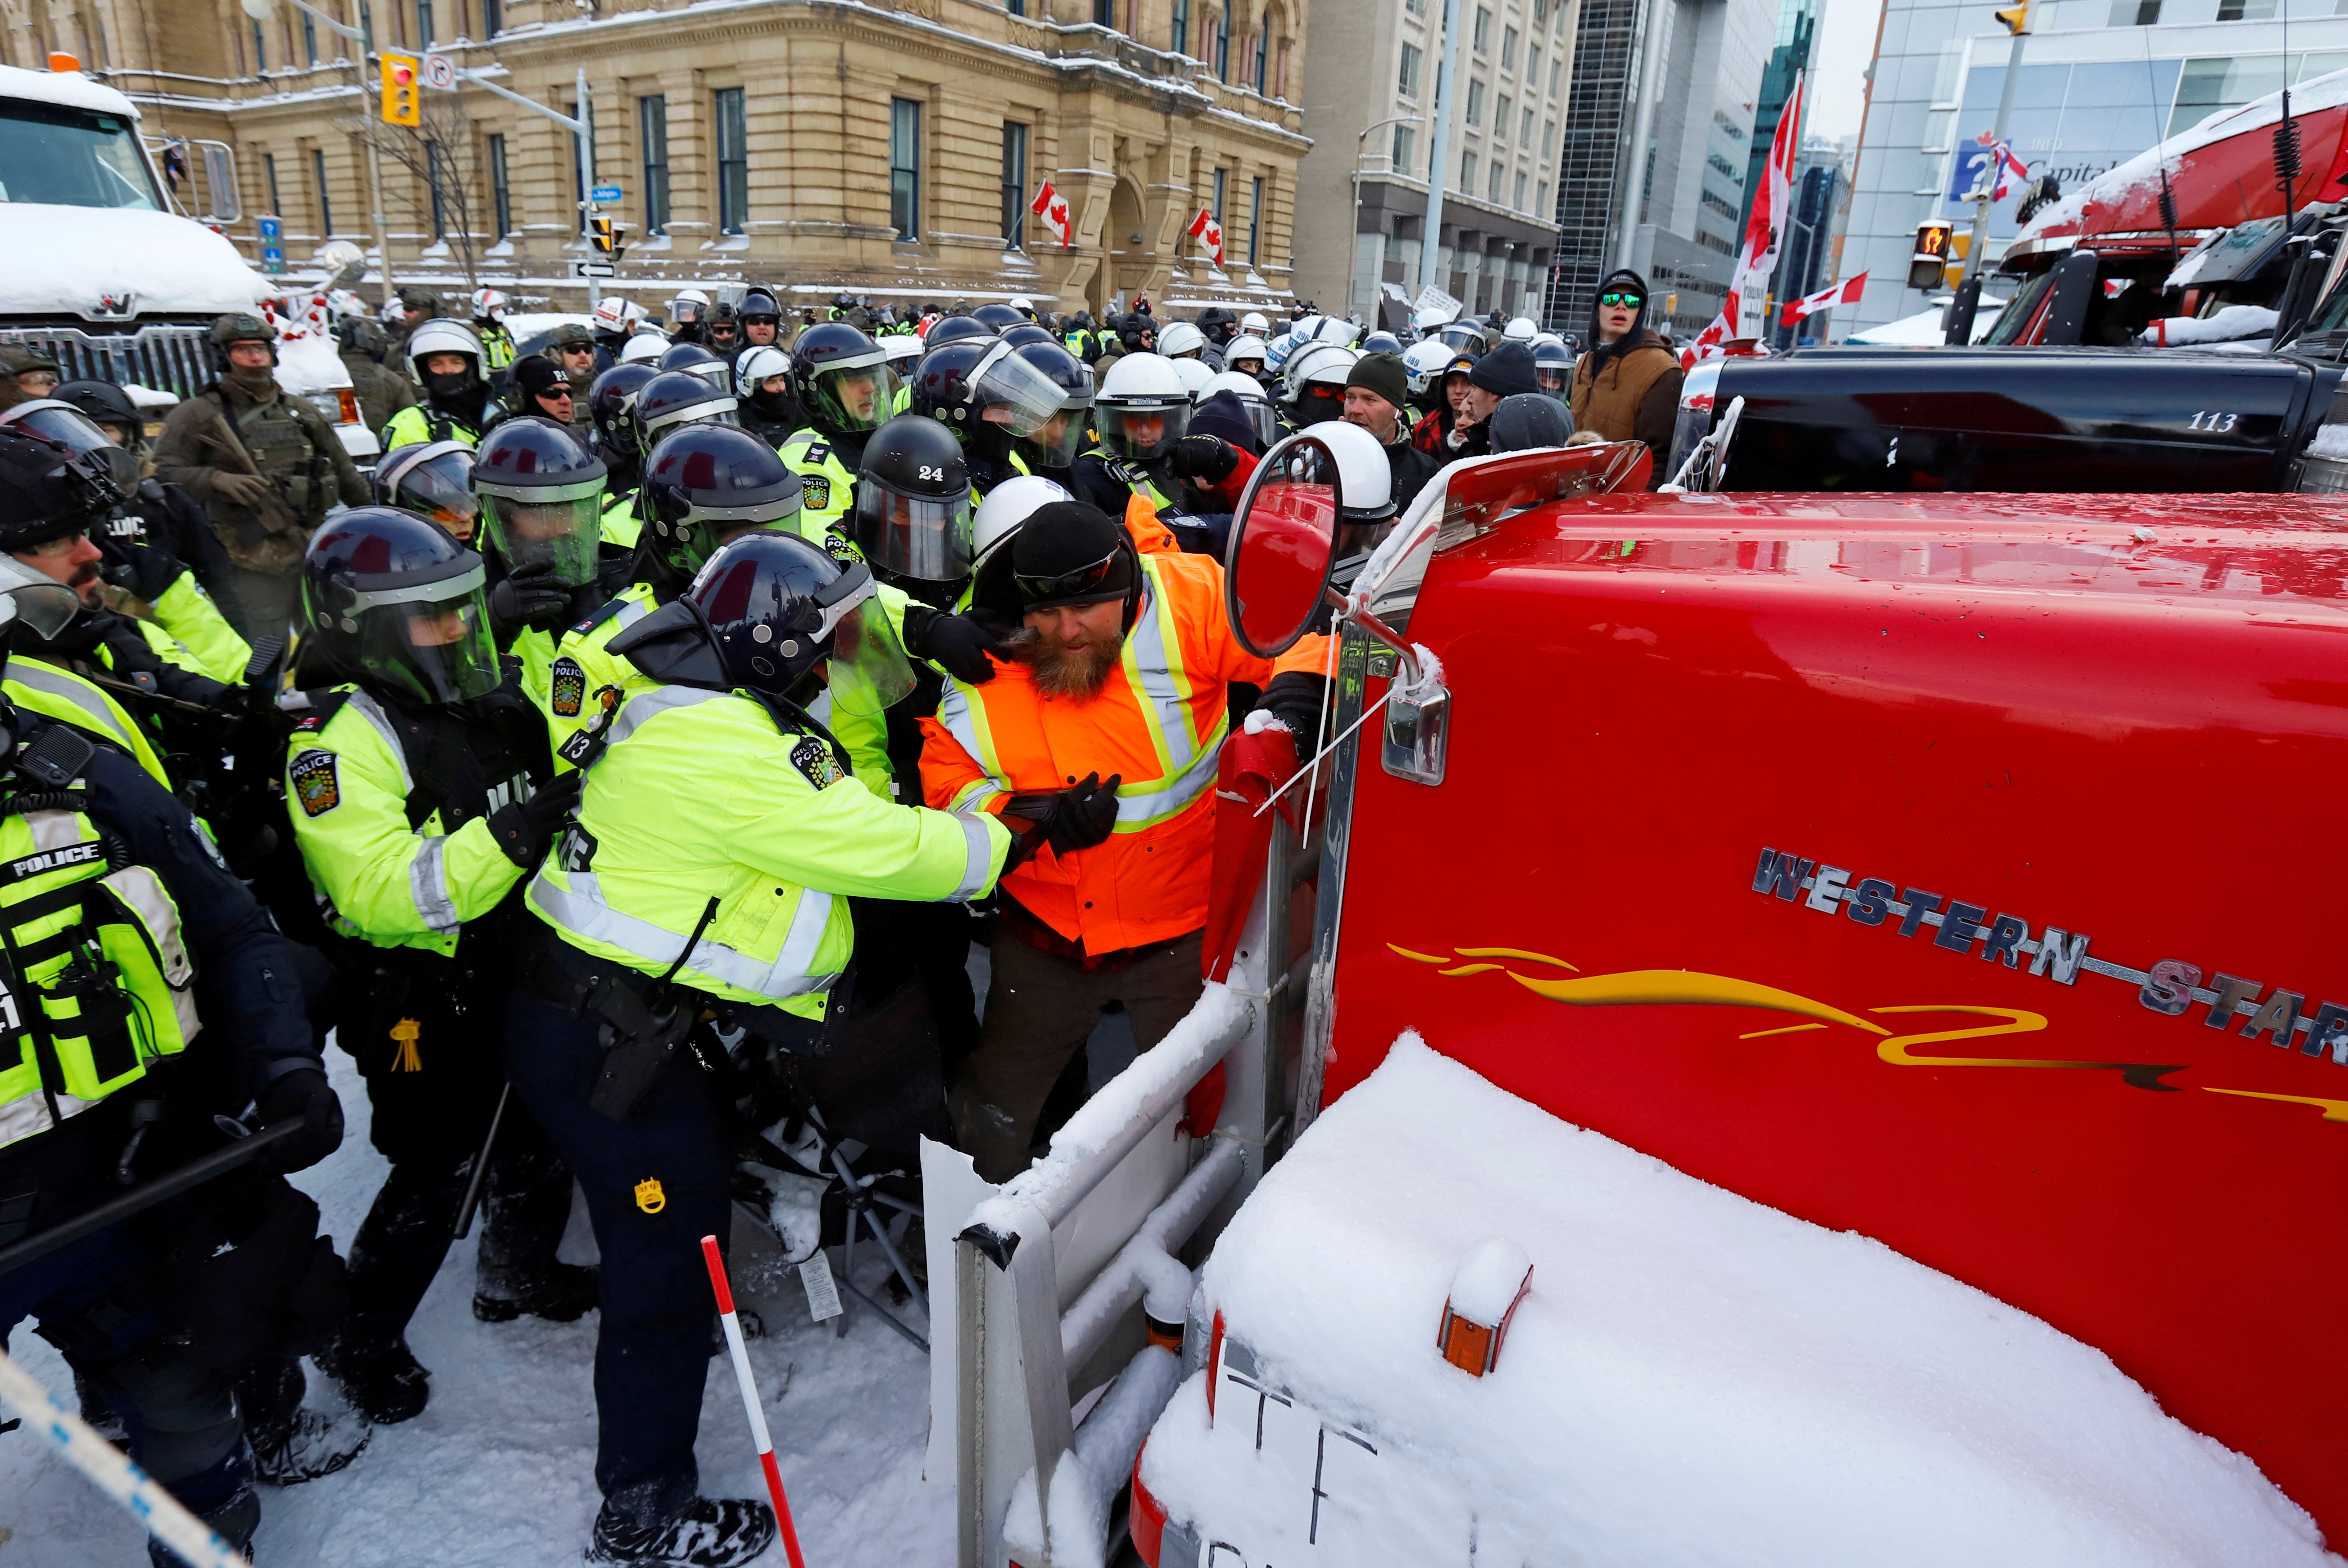 La policía canadiense empuja a un manifestante contra un camión frente a la Colina del Parlamento mientras la policía trabaja para restablecer la normalidad en la capital mientras los camiones y los manifestantes siguen ocupando el centro de la ciudad para protestar por las restricciones del covid-19 en Ottawa, Ontario, Canadá, el 19 de febrero de 2022. REUTERS/Patrick Doyle